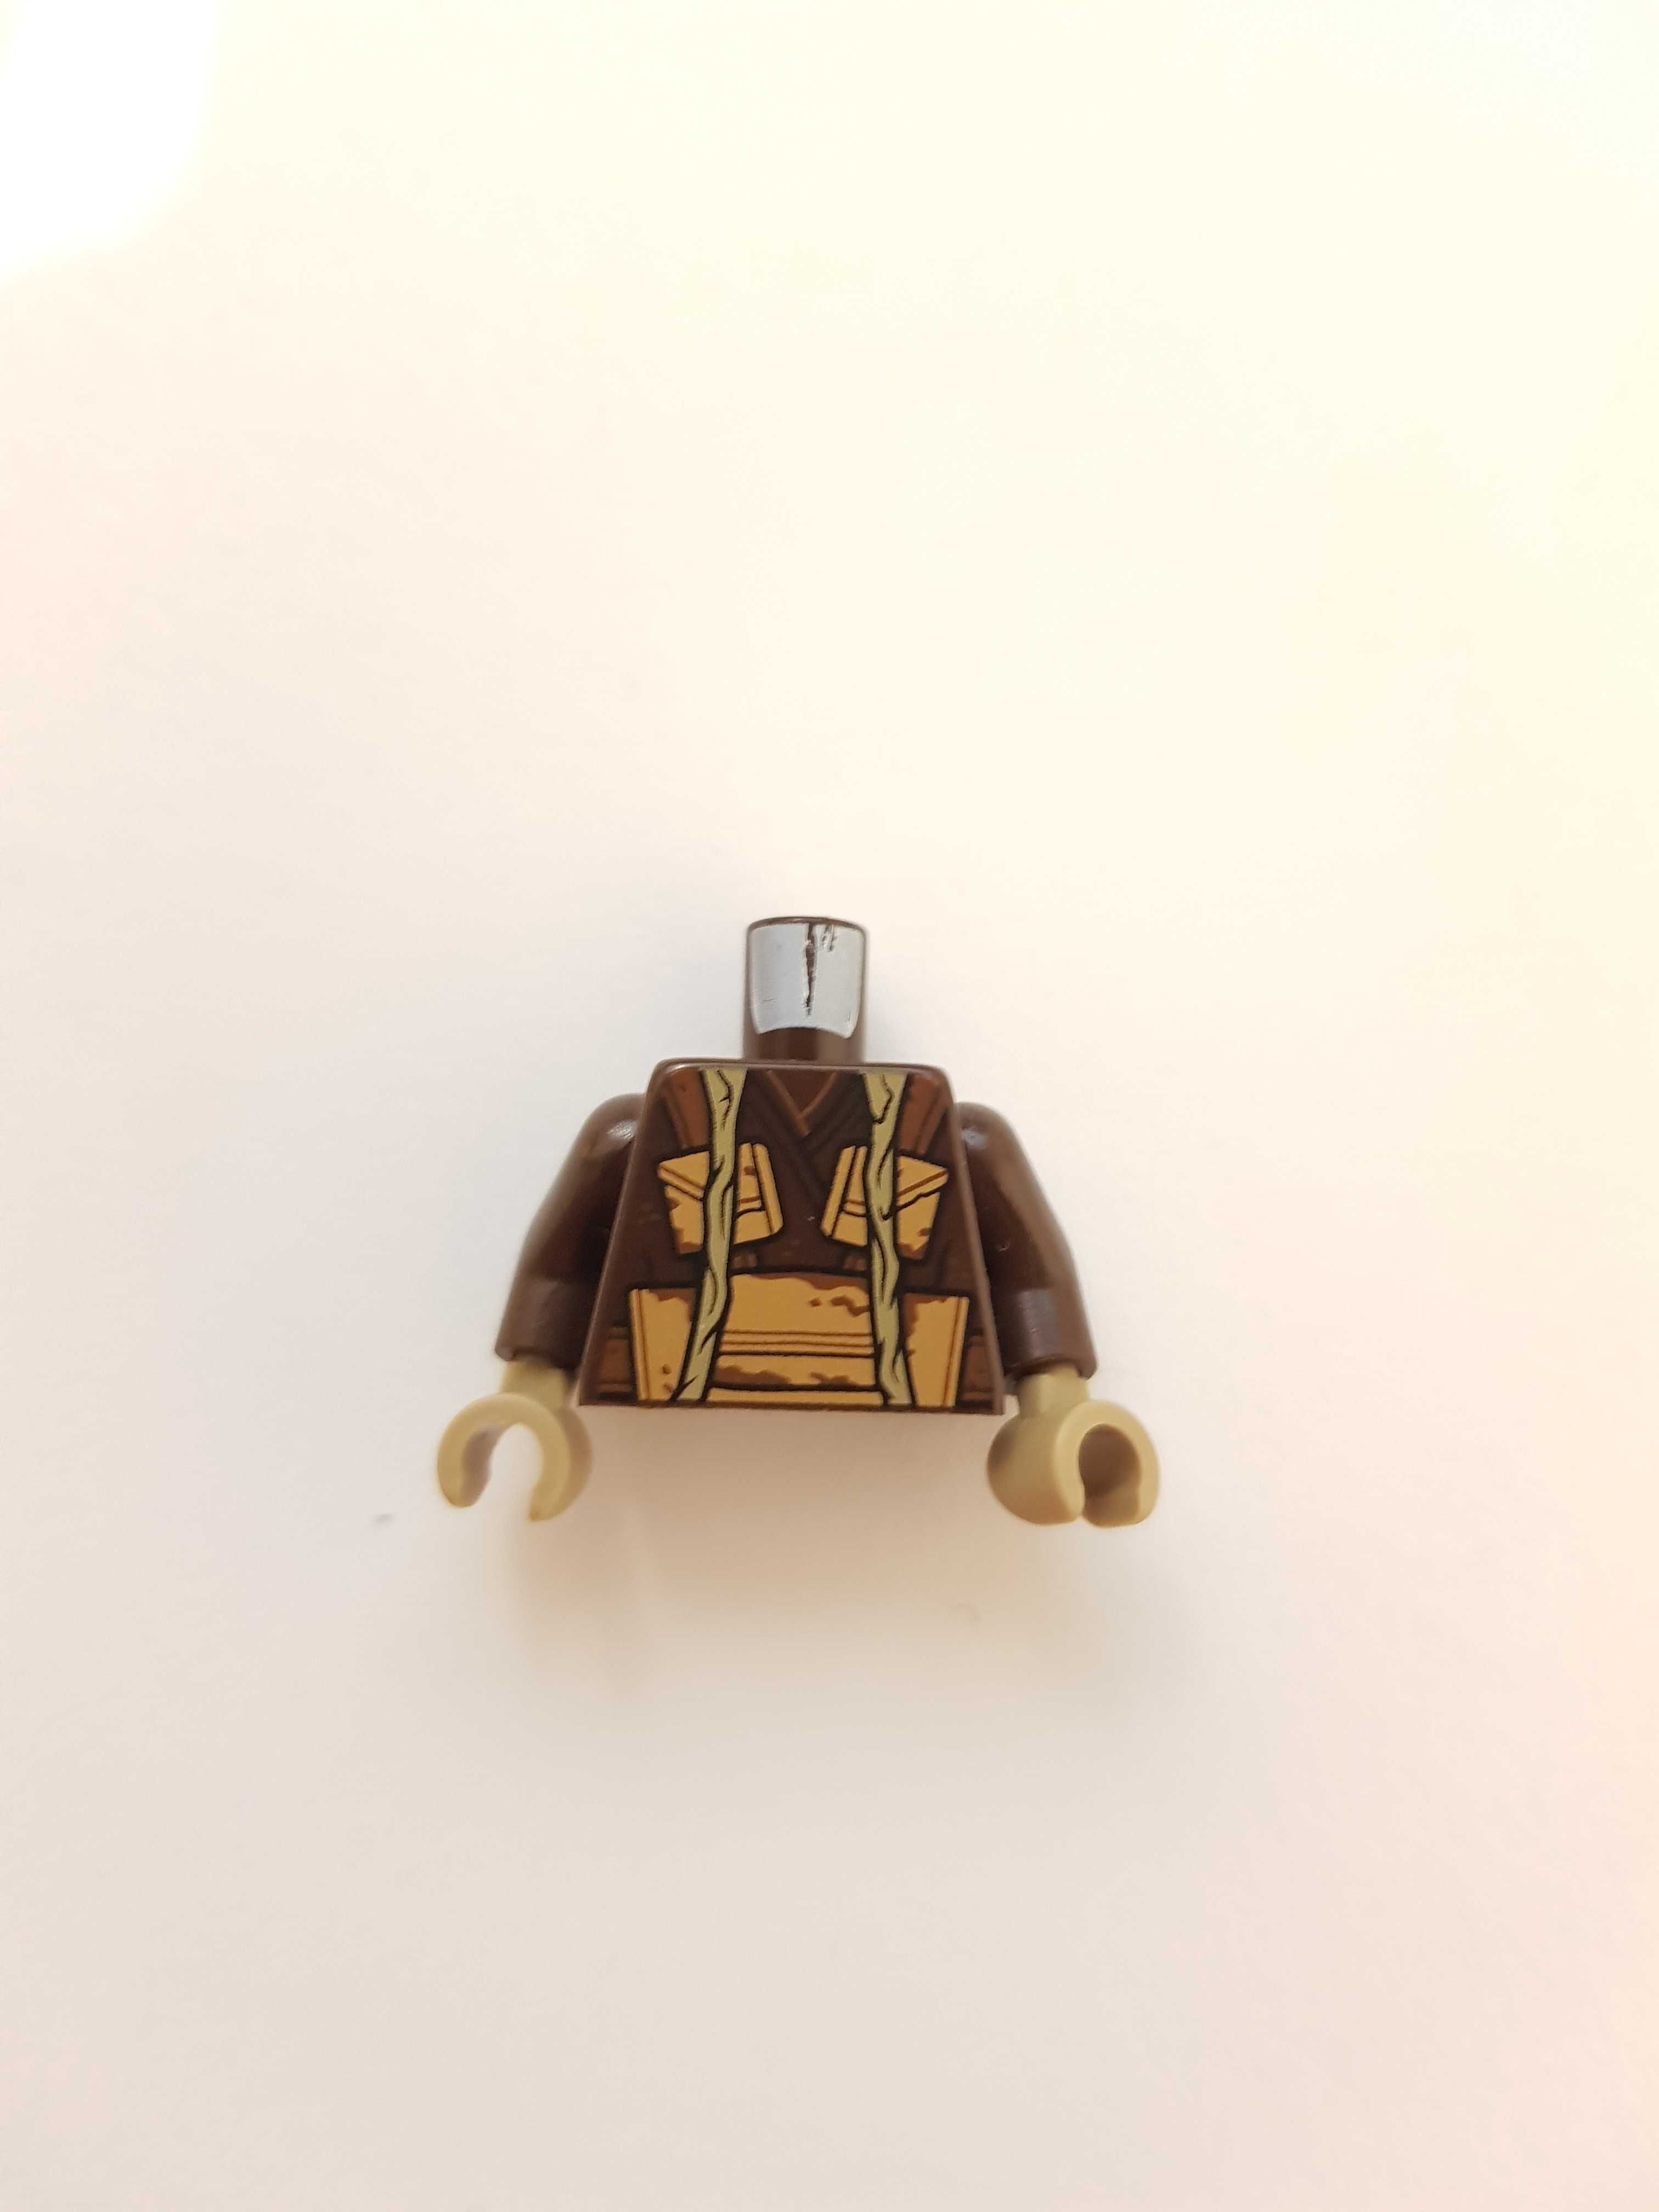 Lego Star Wars 973pb3507c01 tors Zuckuss